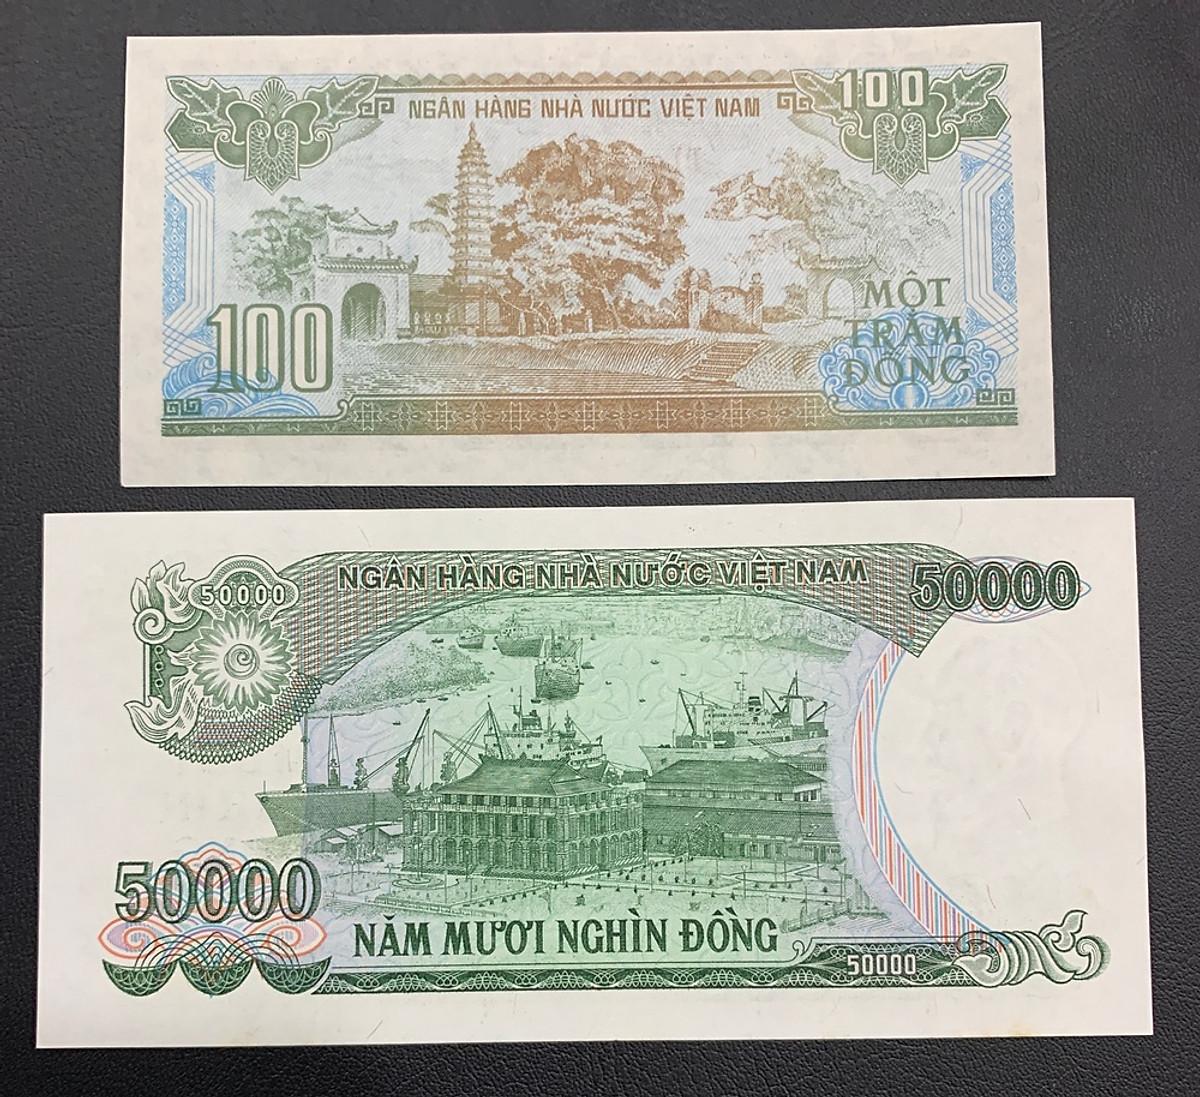 (2 tờ) 100 đồng 1991 và 50 Nghìn xanh lá 1994 giấy cotton ngày xưa [MỚI 99%] sưu tầm, sưu tầm